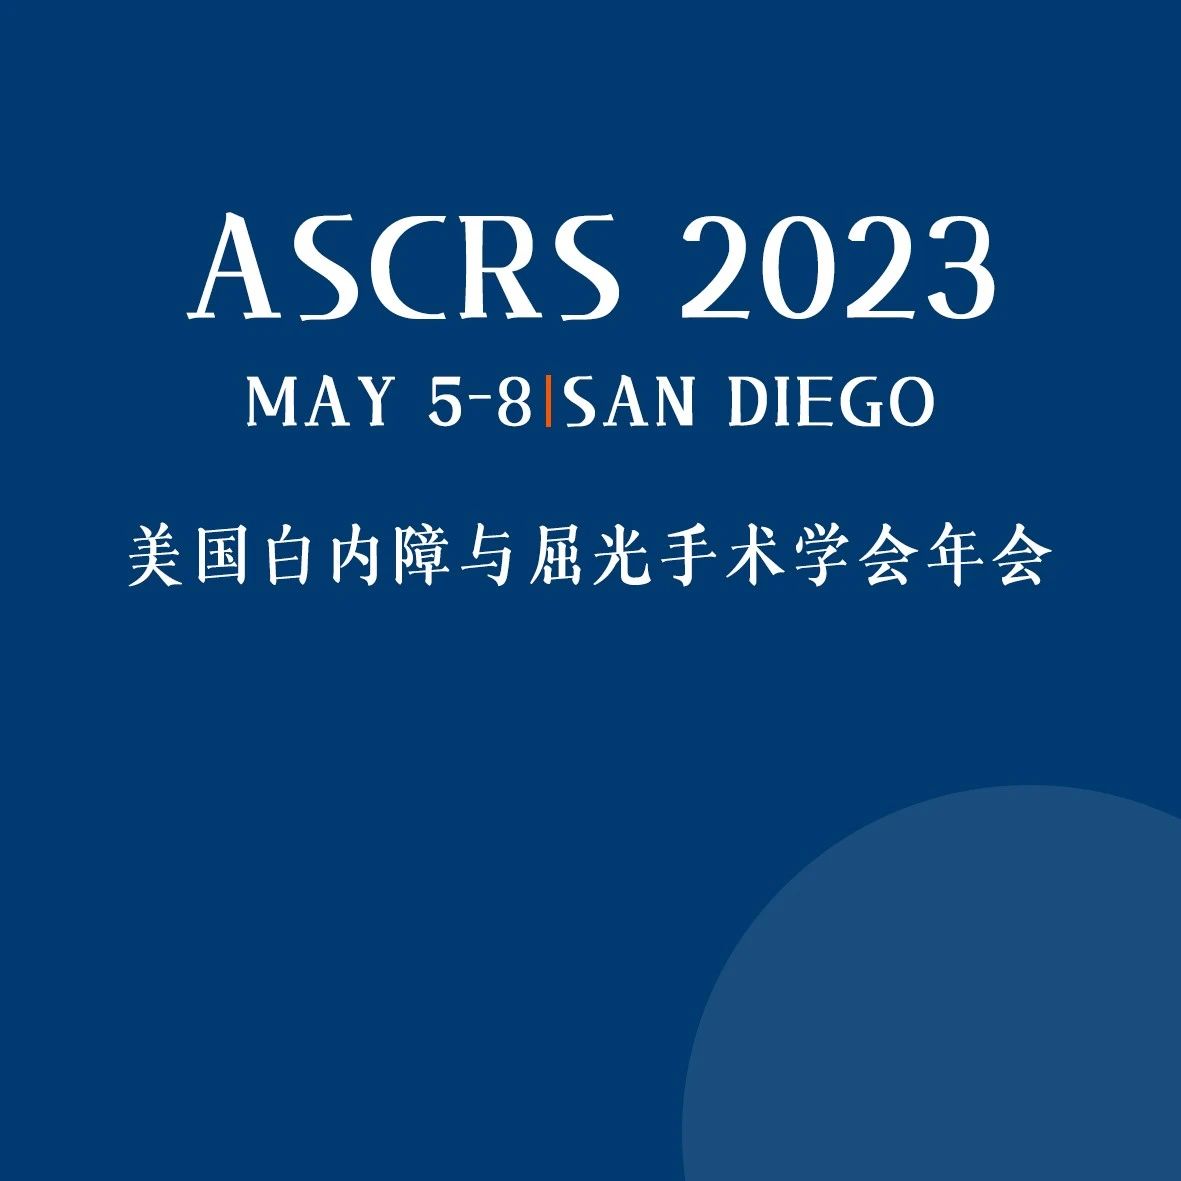 2023ASCRS专科日——角膜日、青光眼日、屈光日，精彩相候、不可错过！